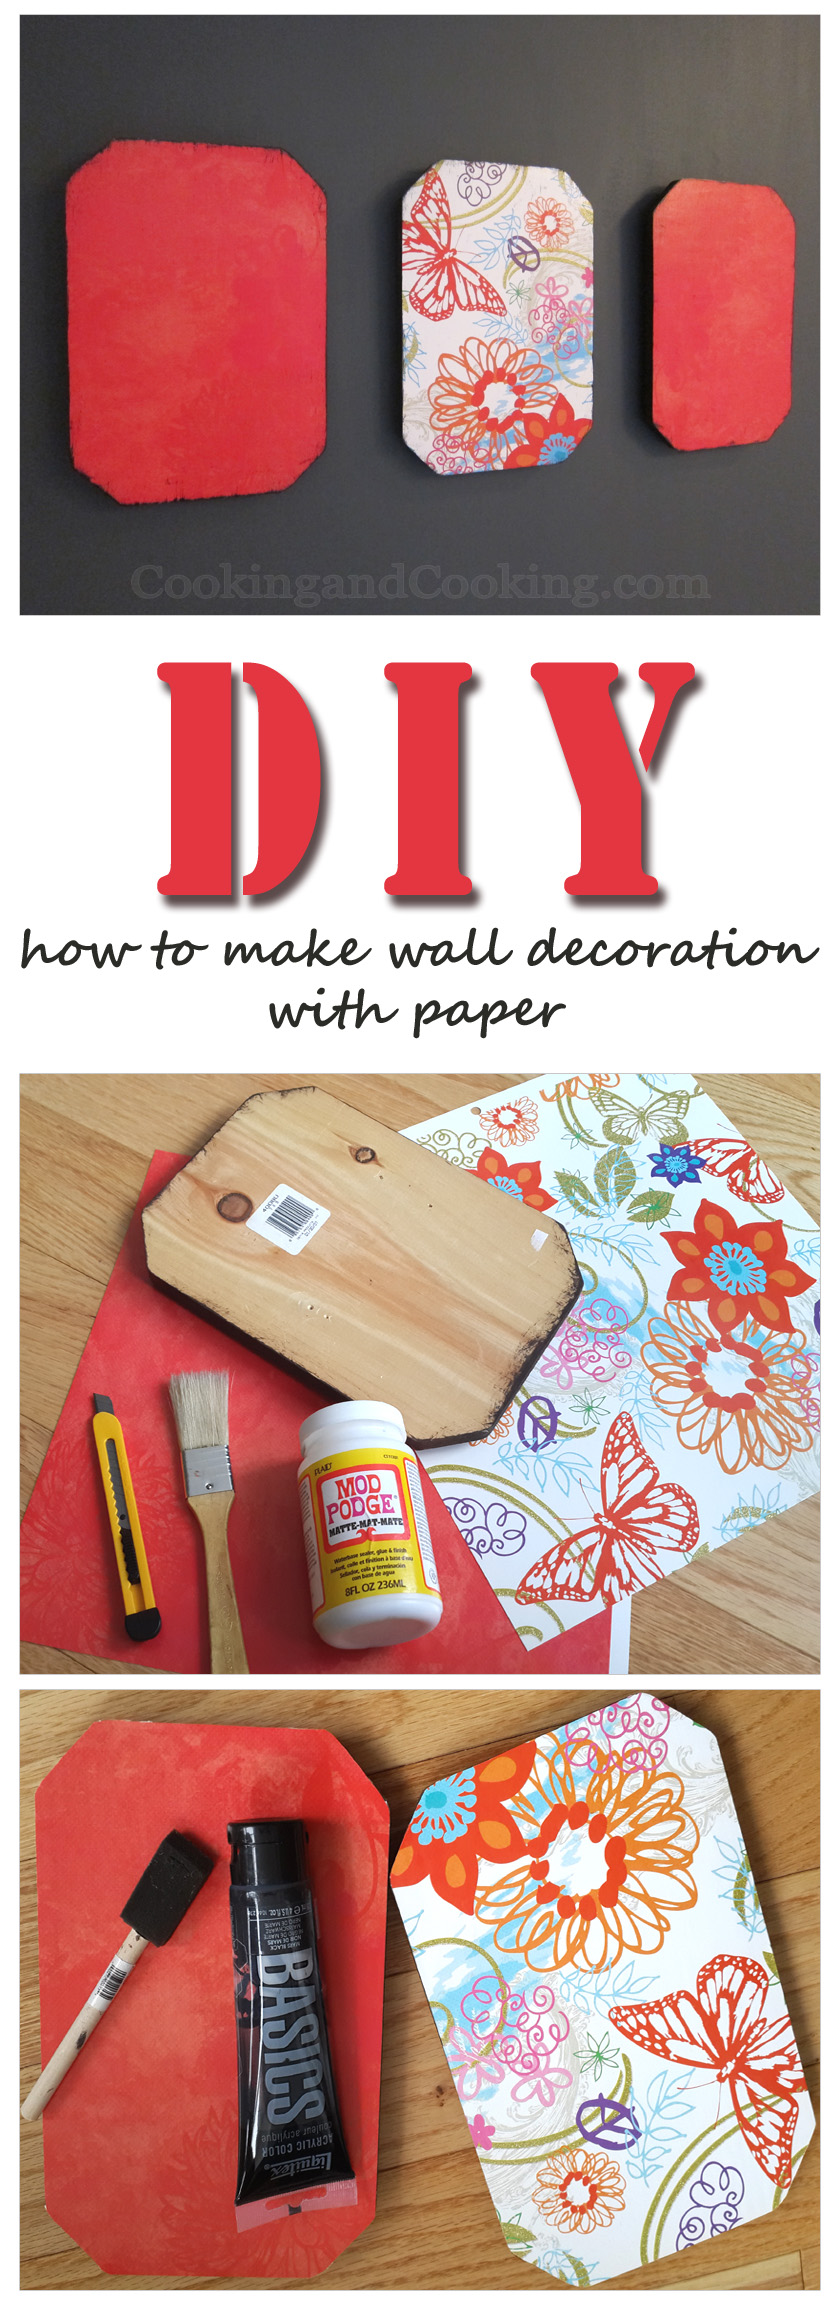 DIY-Wall-Decoration